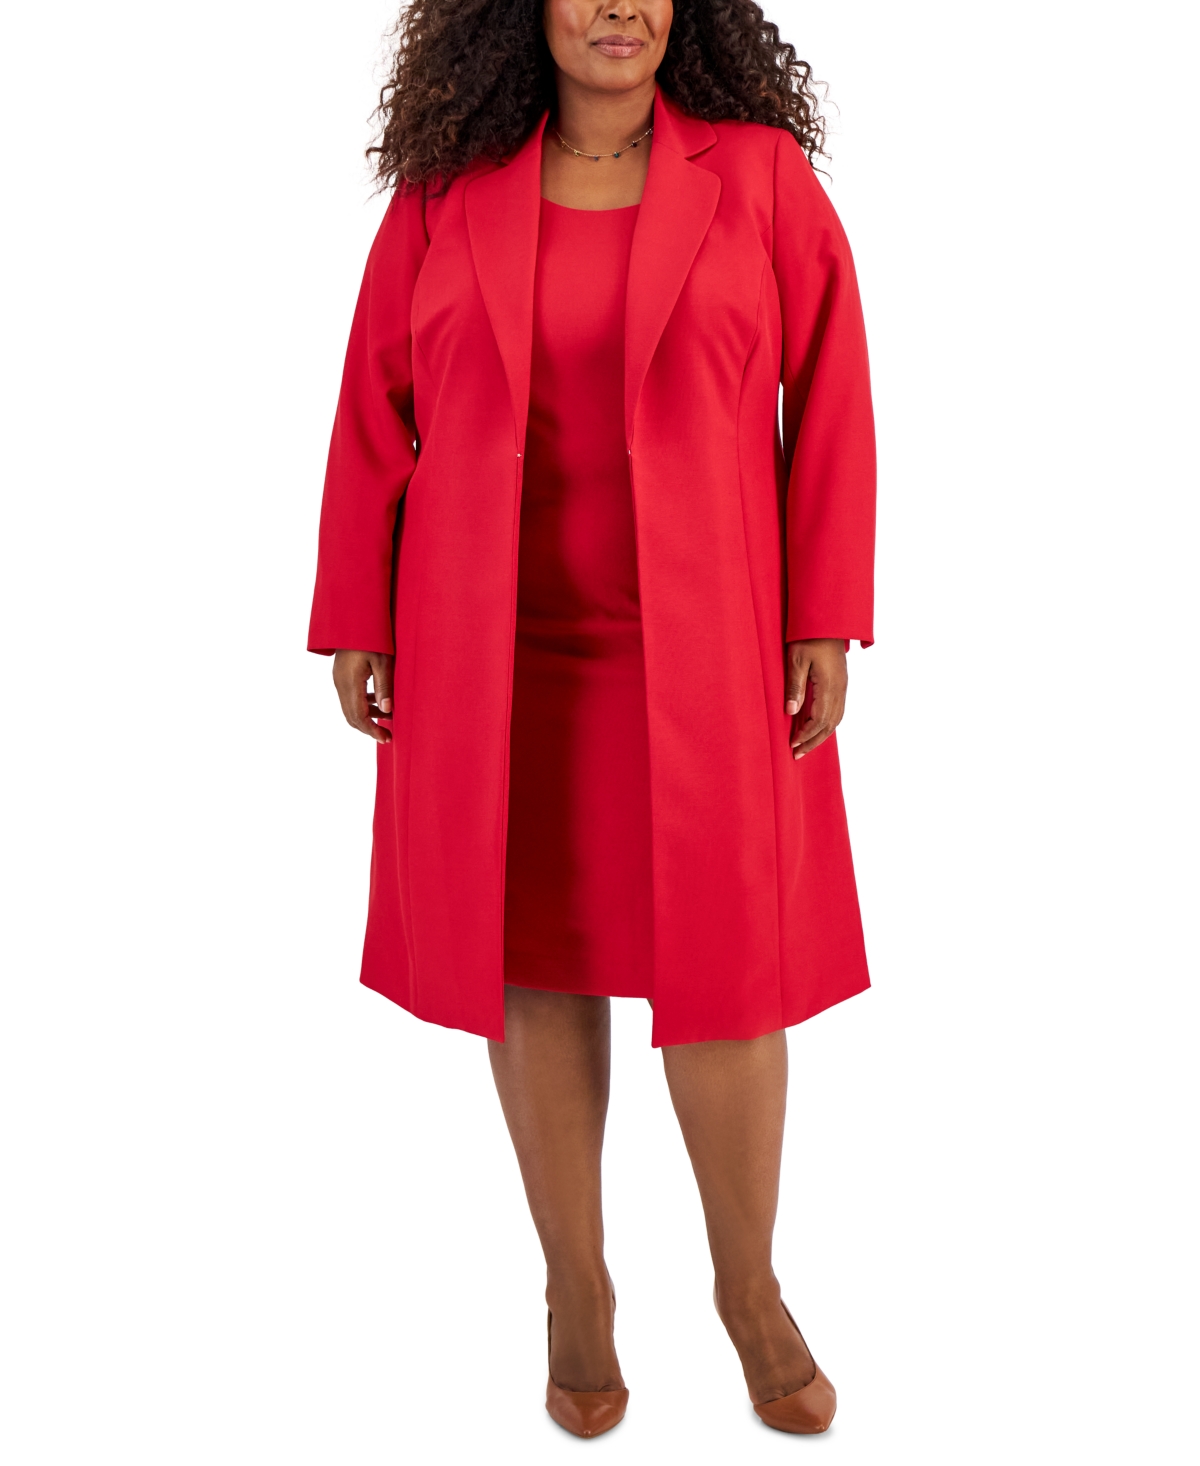 Plus Size Topper Jacket & Sheath Dress Suit - Cherry